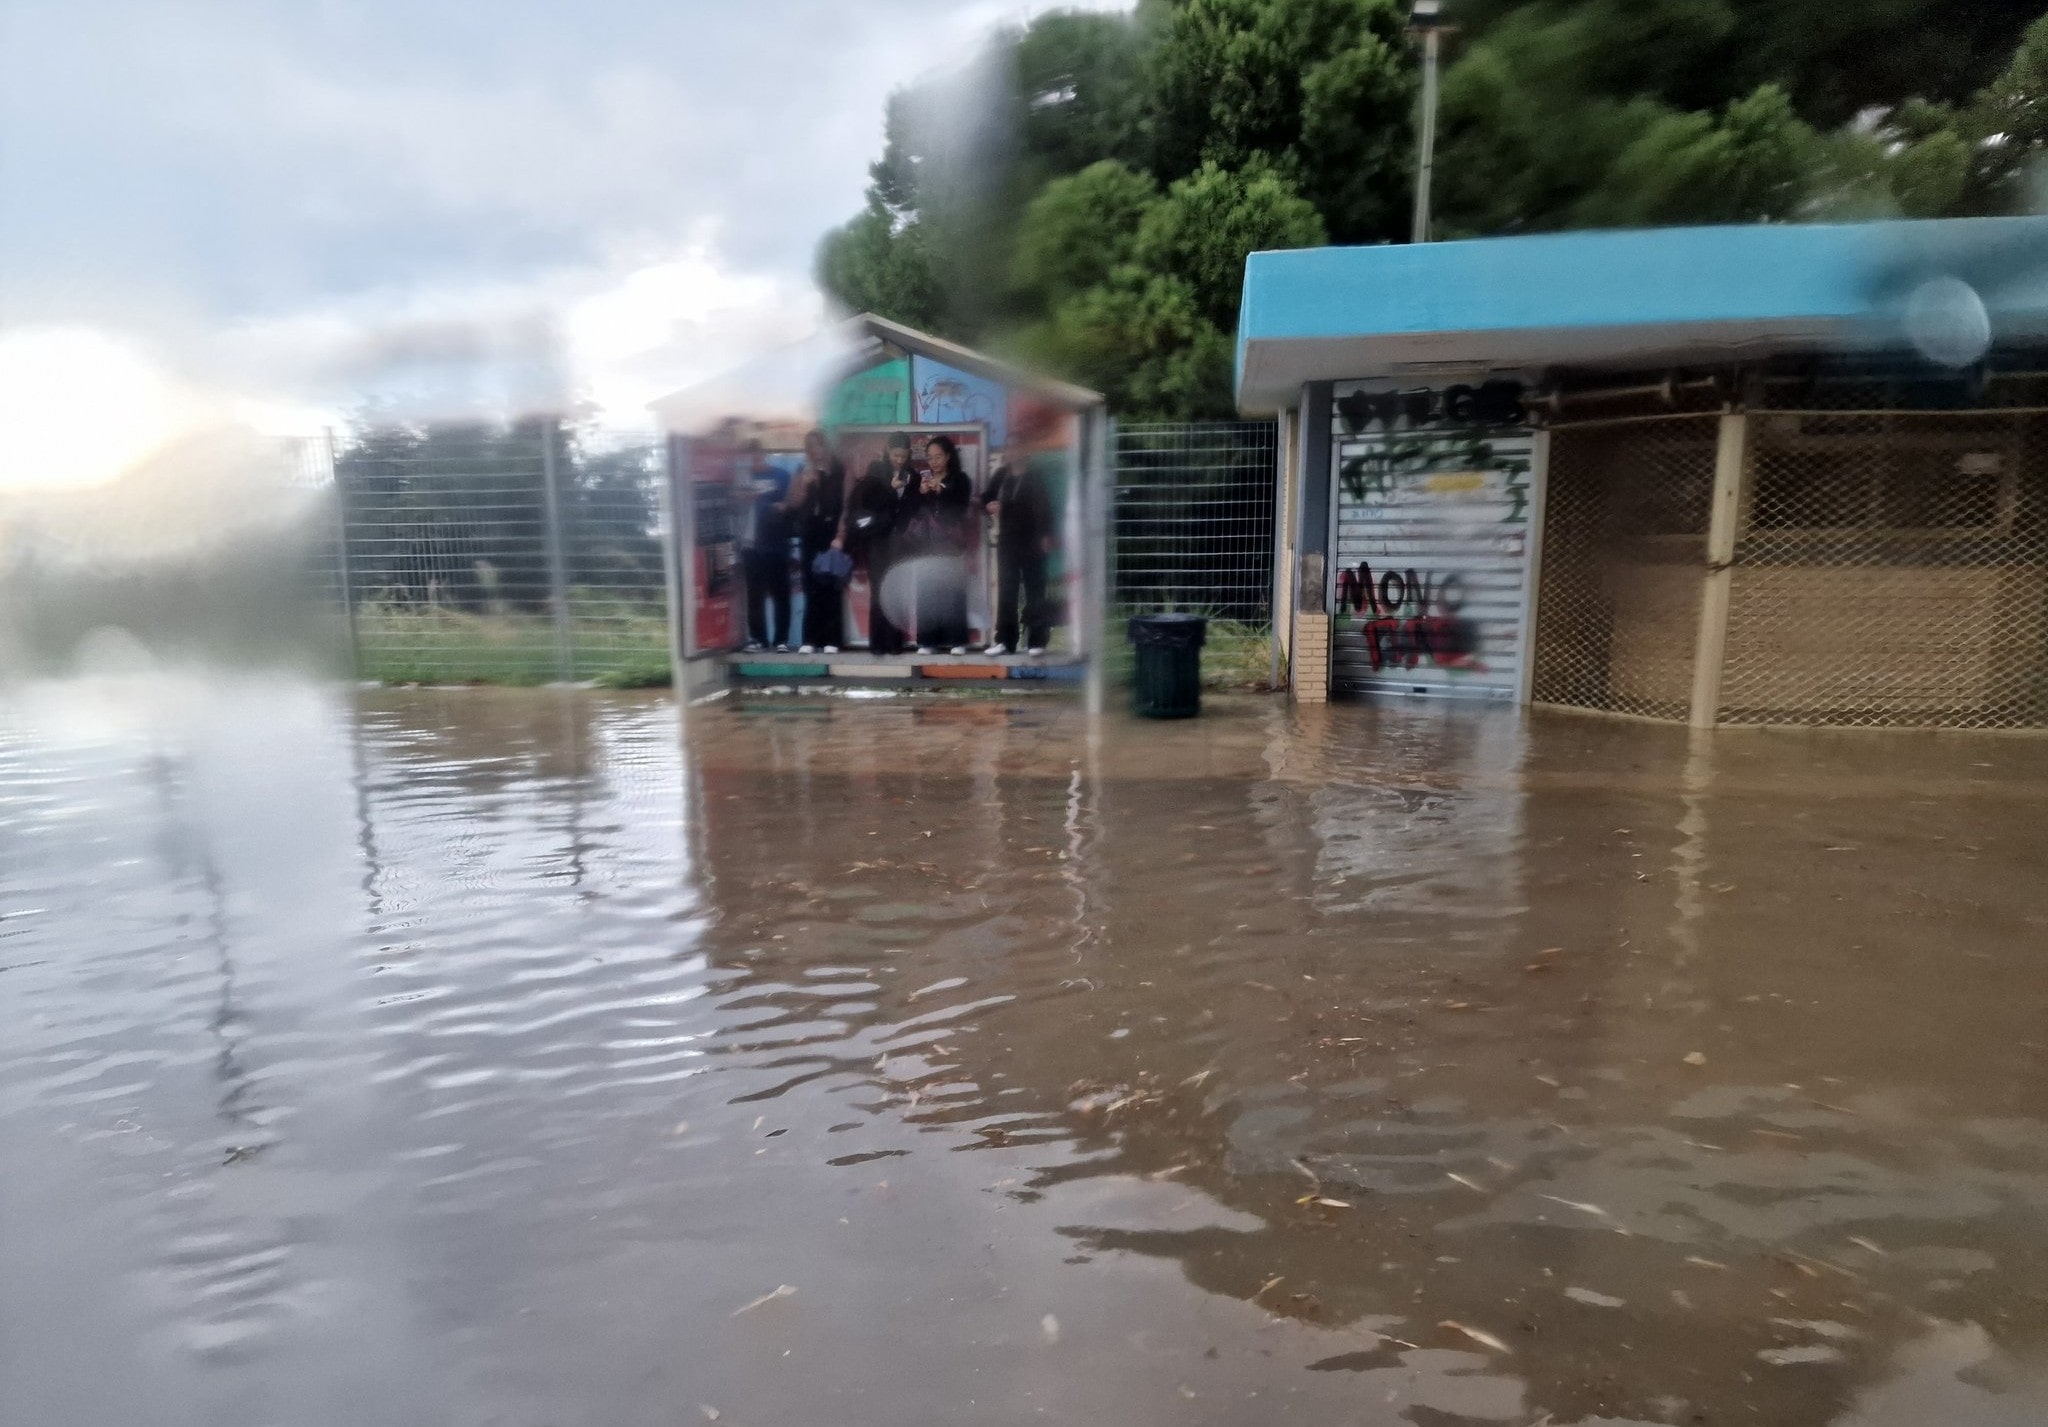  Πλημμύρες στο Πανεπιστήμιο Πατρών από την κακοκαιρία / ΒΙΝΤΕΟ